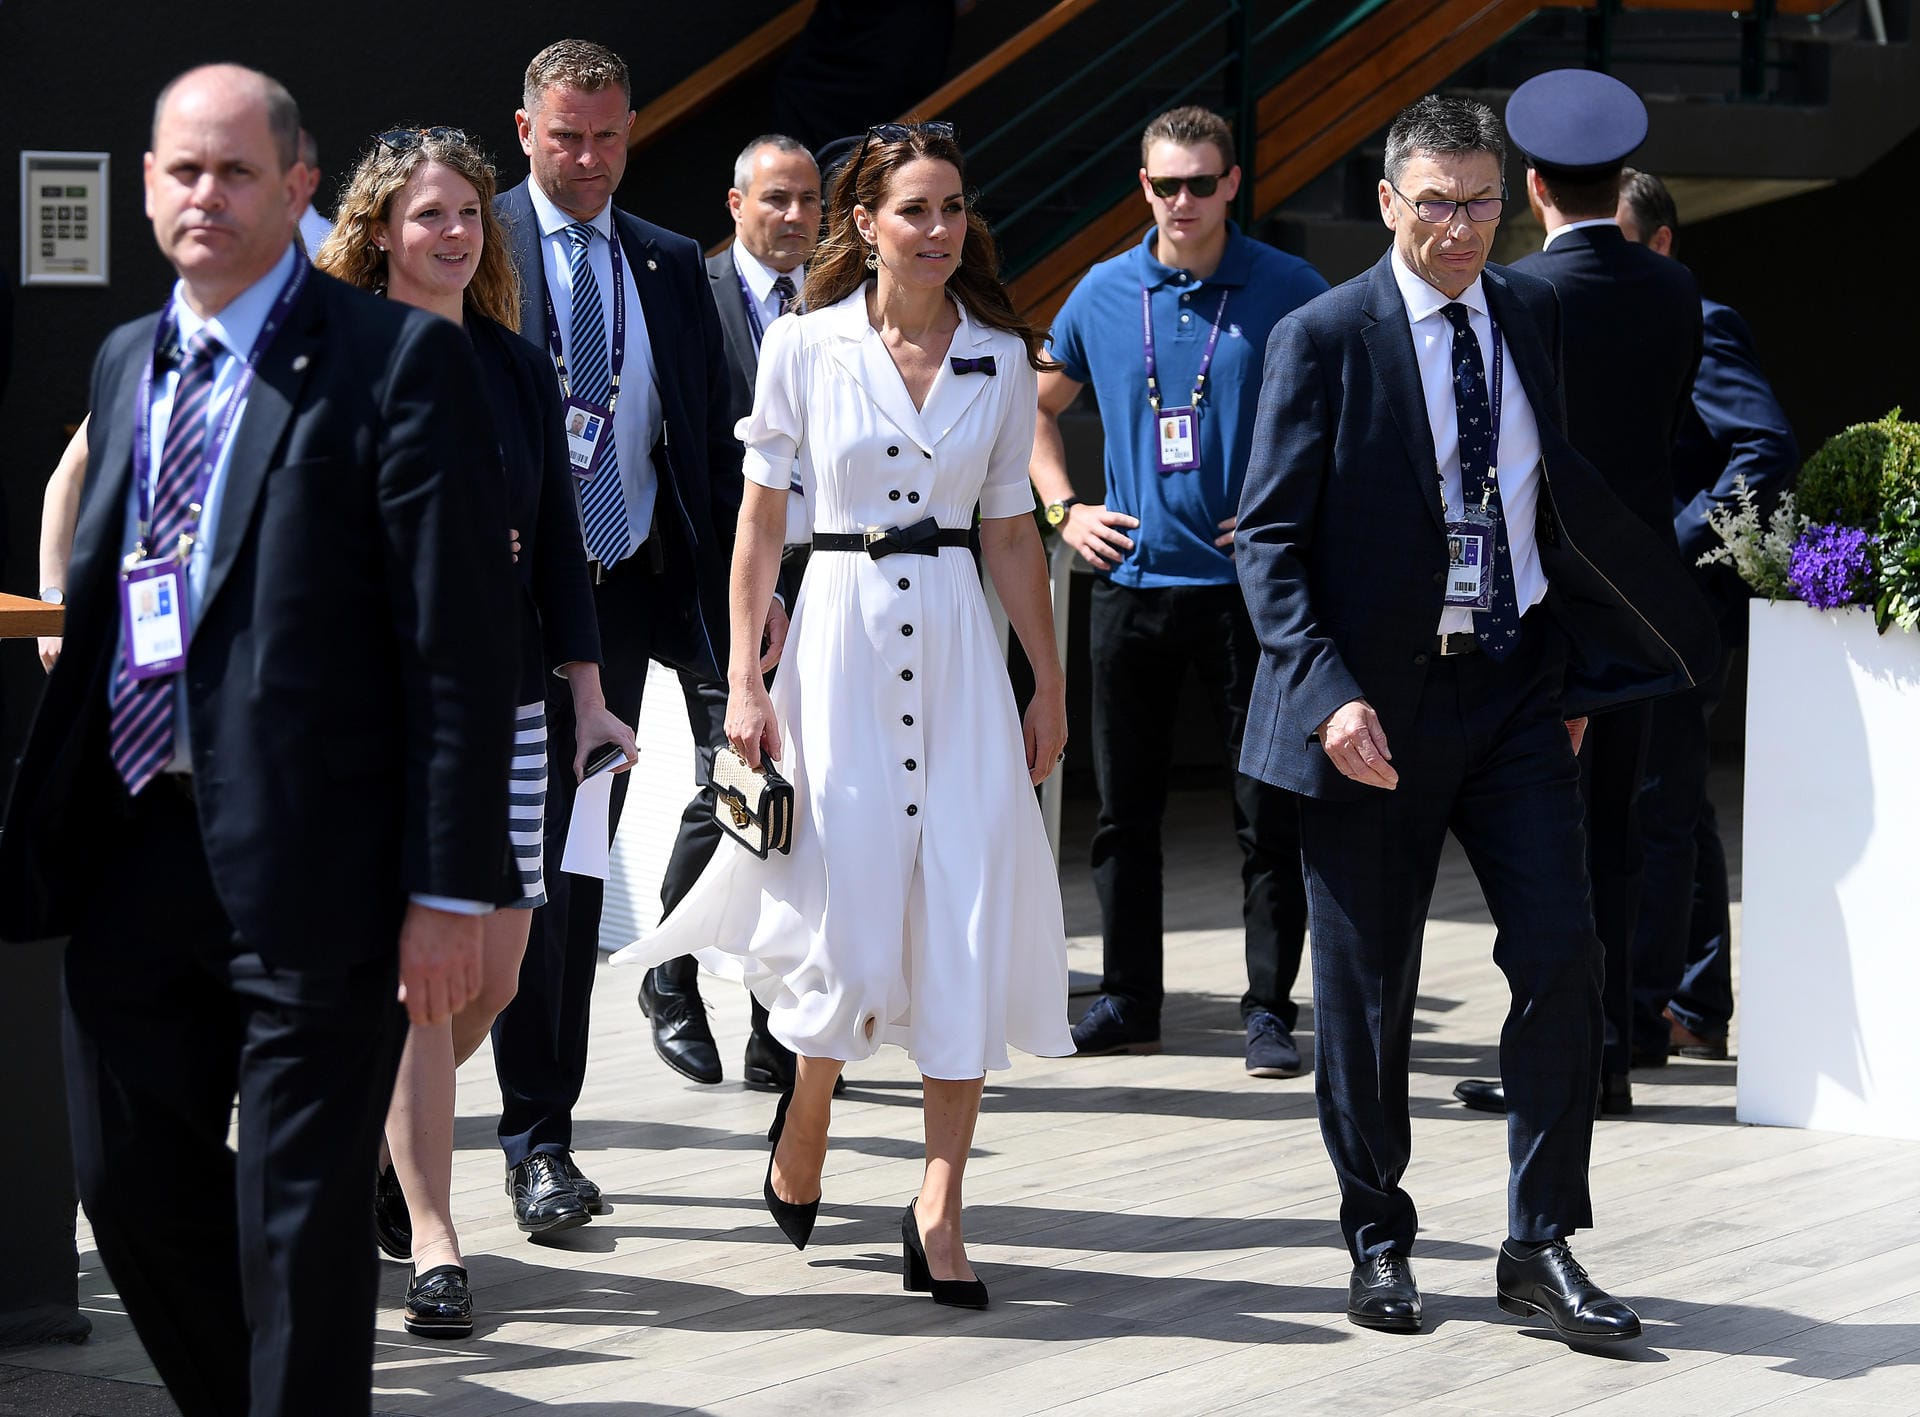 Tag zwei der Wimbledon-Turniere: Herzogin Kate kommt an, hat ein weißes Kleid mit schwarzem Gürtel und Knöpfen gewählt.